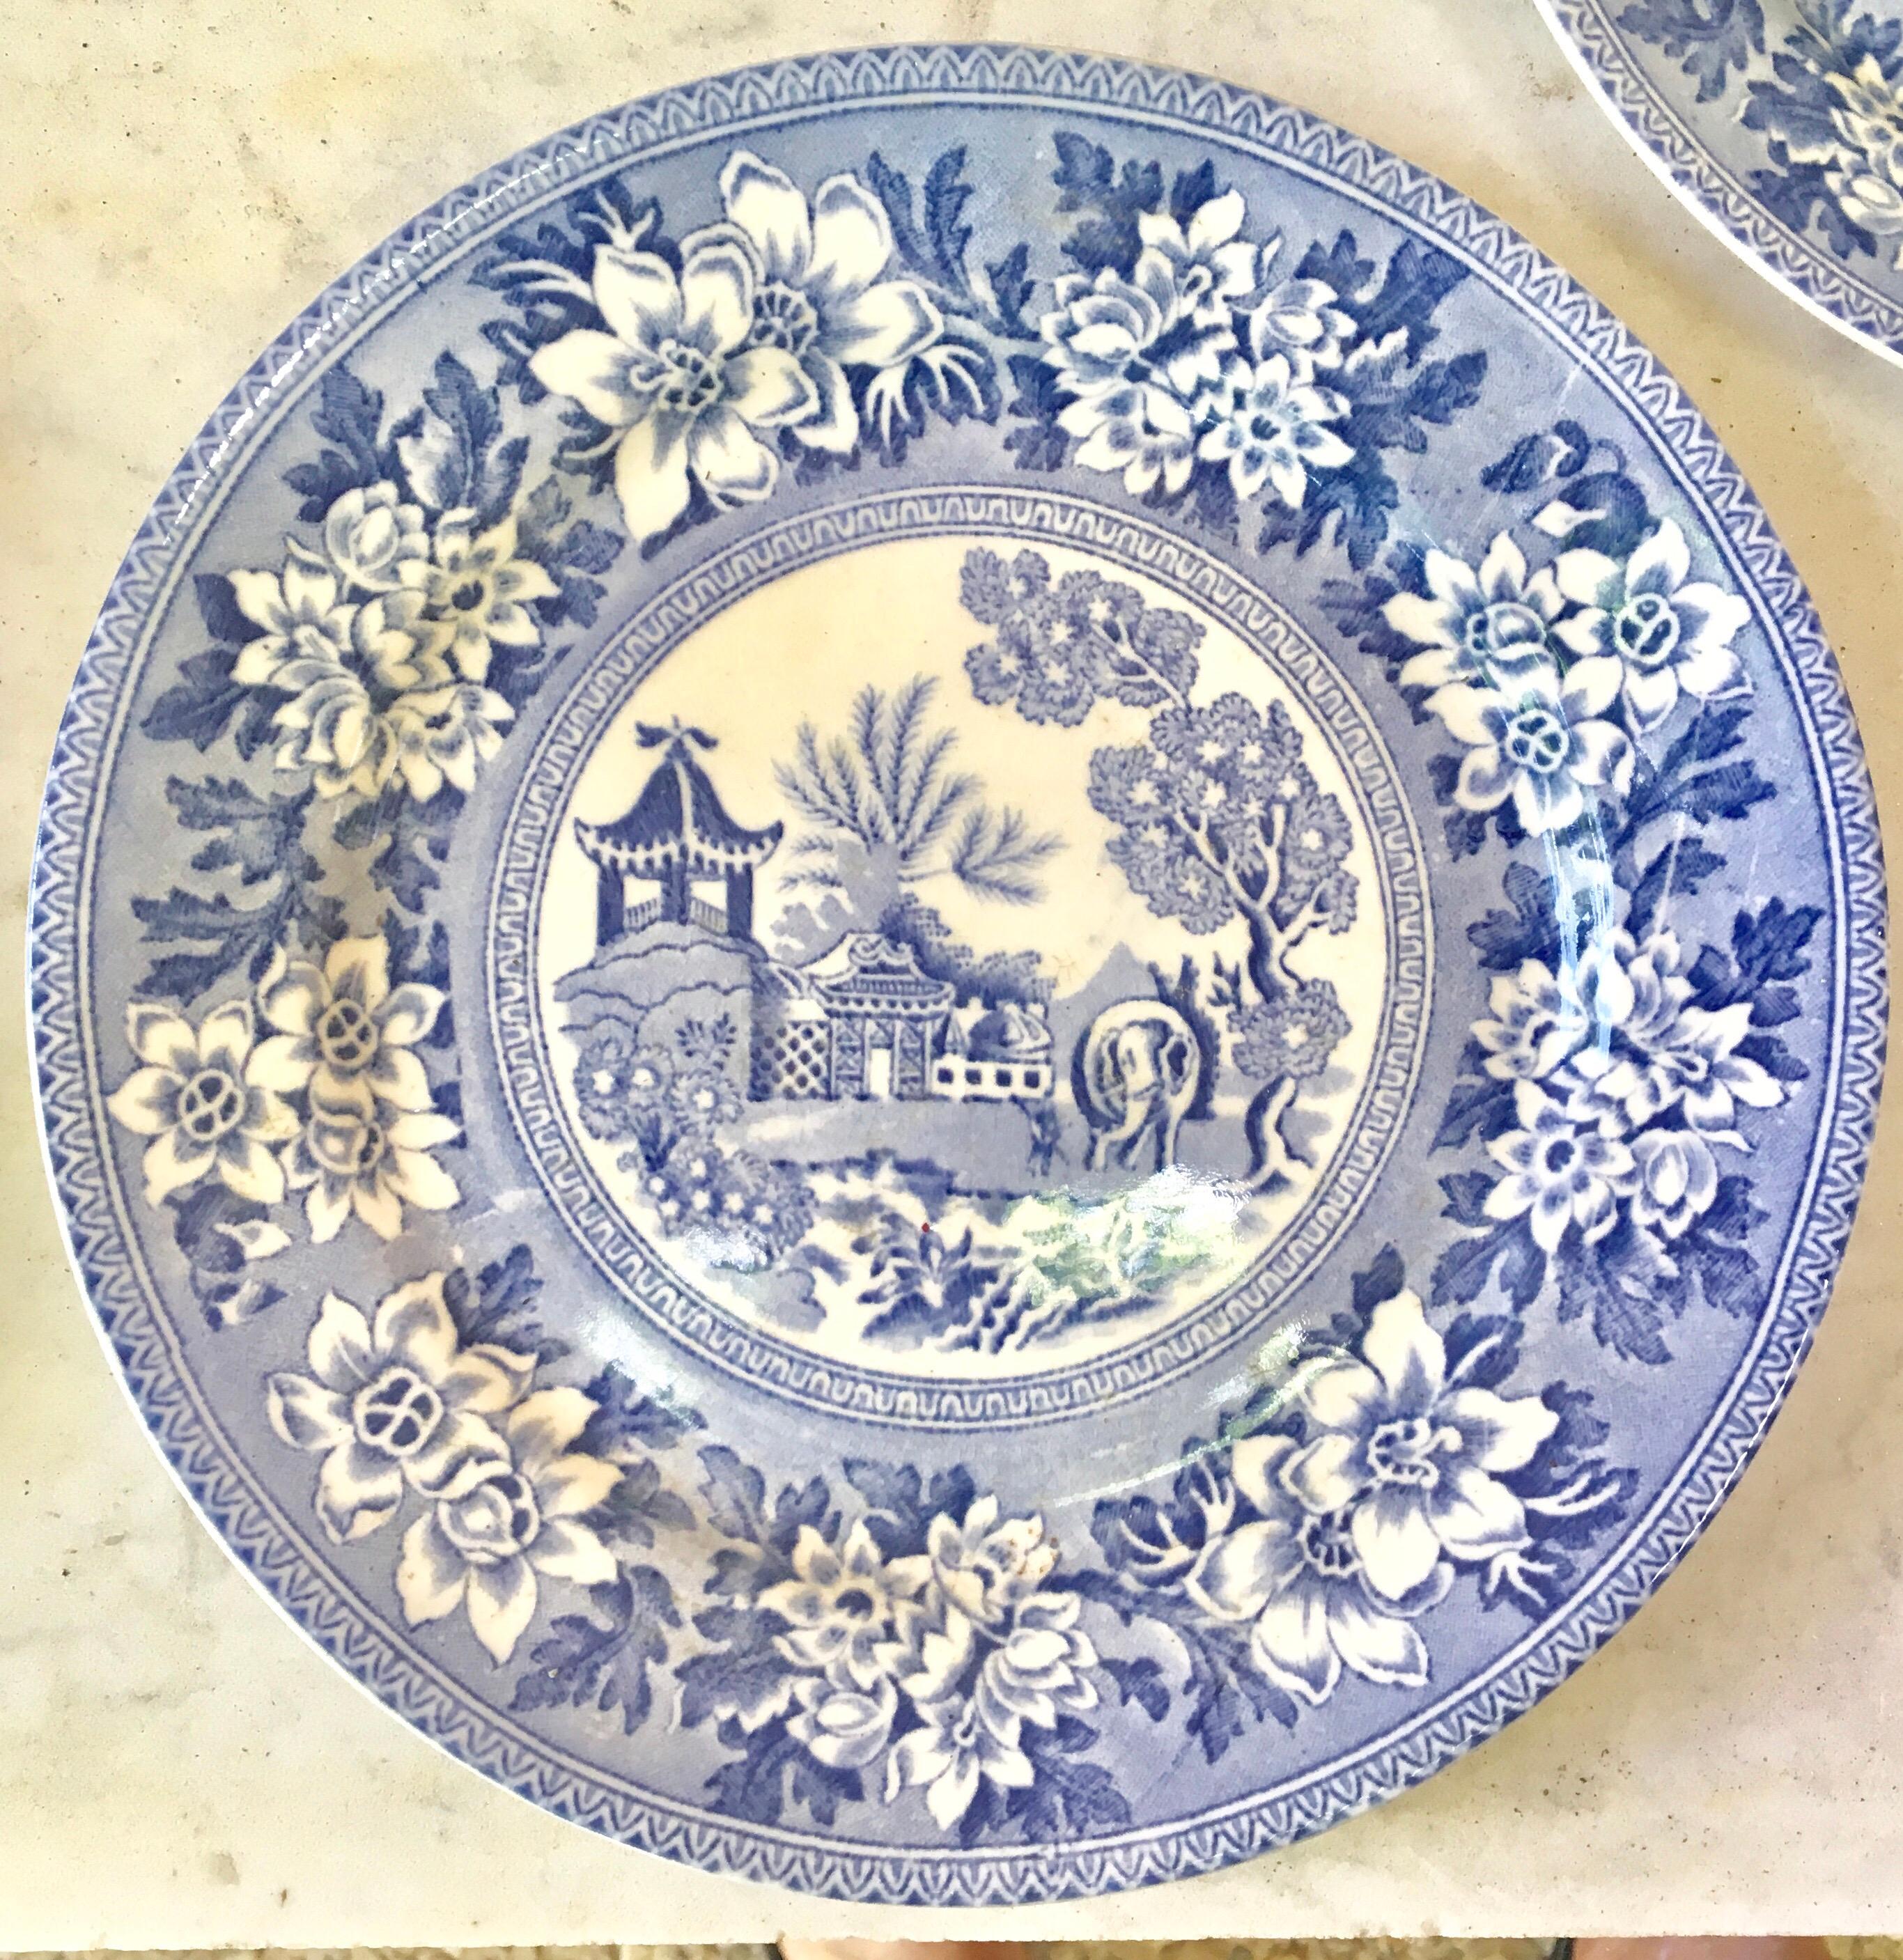 Set of six English blue & white dessert plates signed Burslem.
1780 pattern Pagoda/elephant.
End of 19th century.